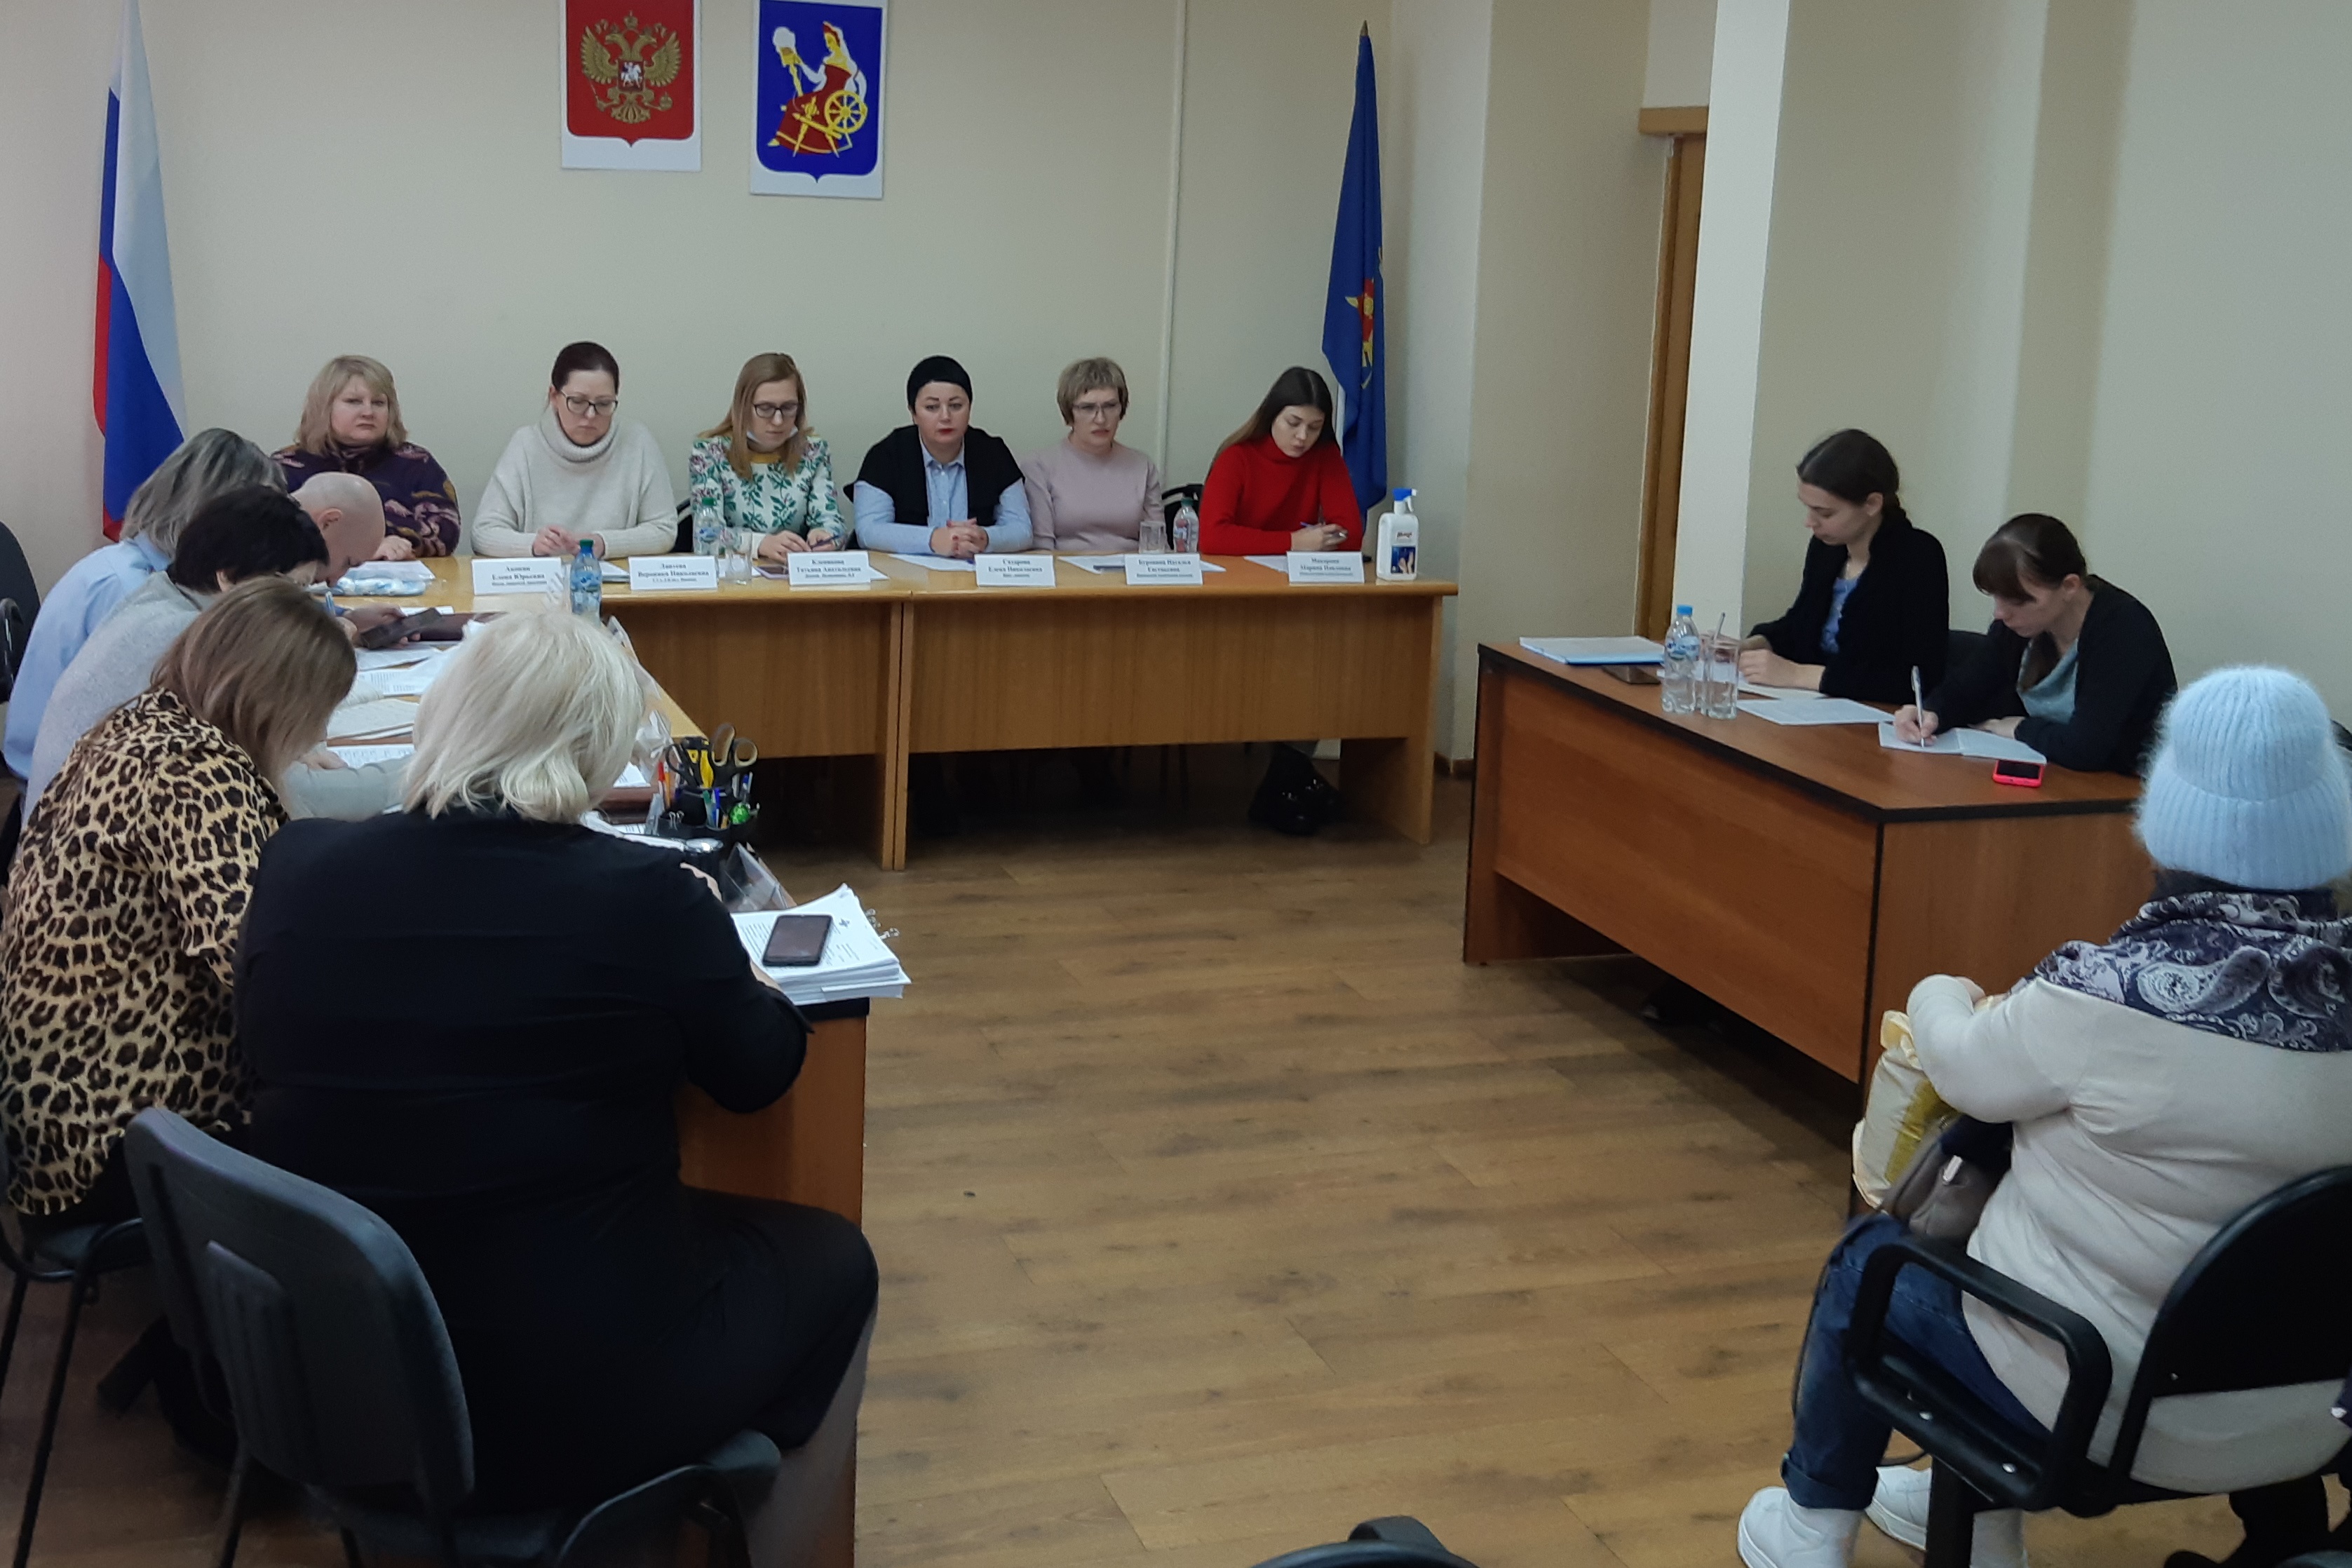 В мэрии состоялось плановое заседание комиссии по делам несовершеннолетних и защите их прав по Советскому району.